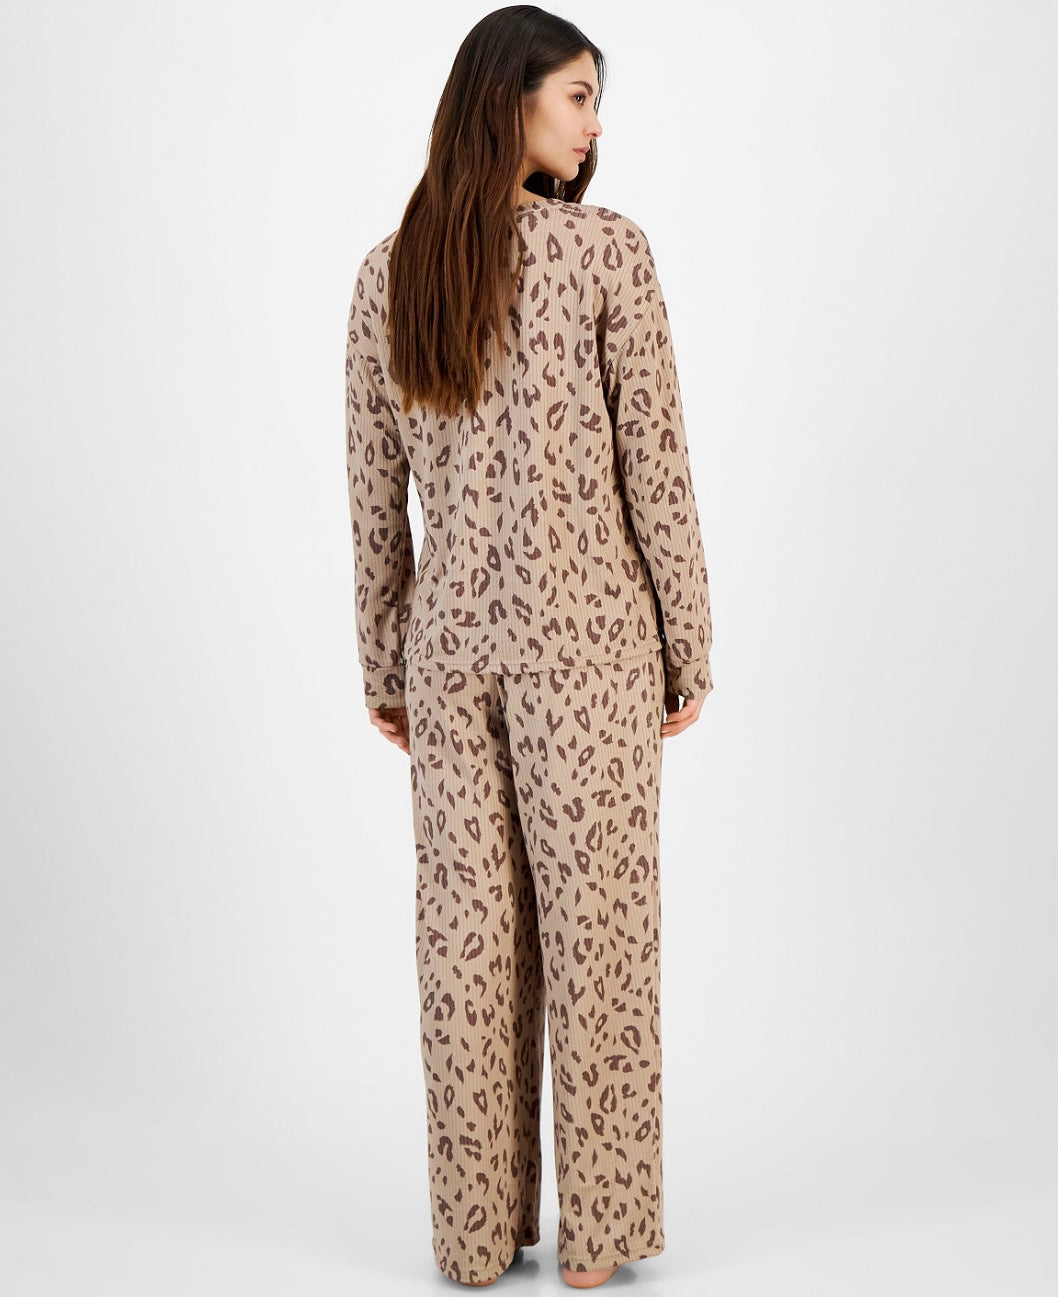 Jenni Women's Long Sleeve Cozy Pajama Set Brown Spacedye Leopard Size M